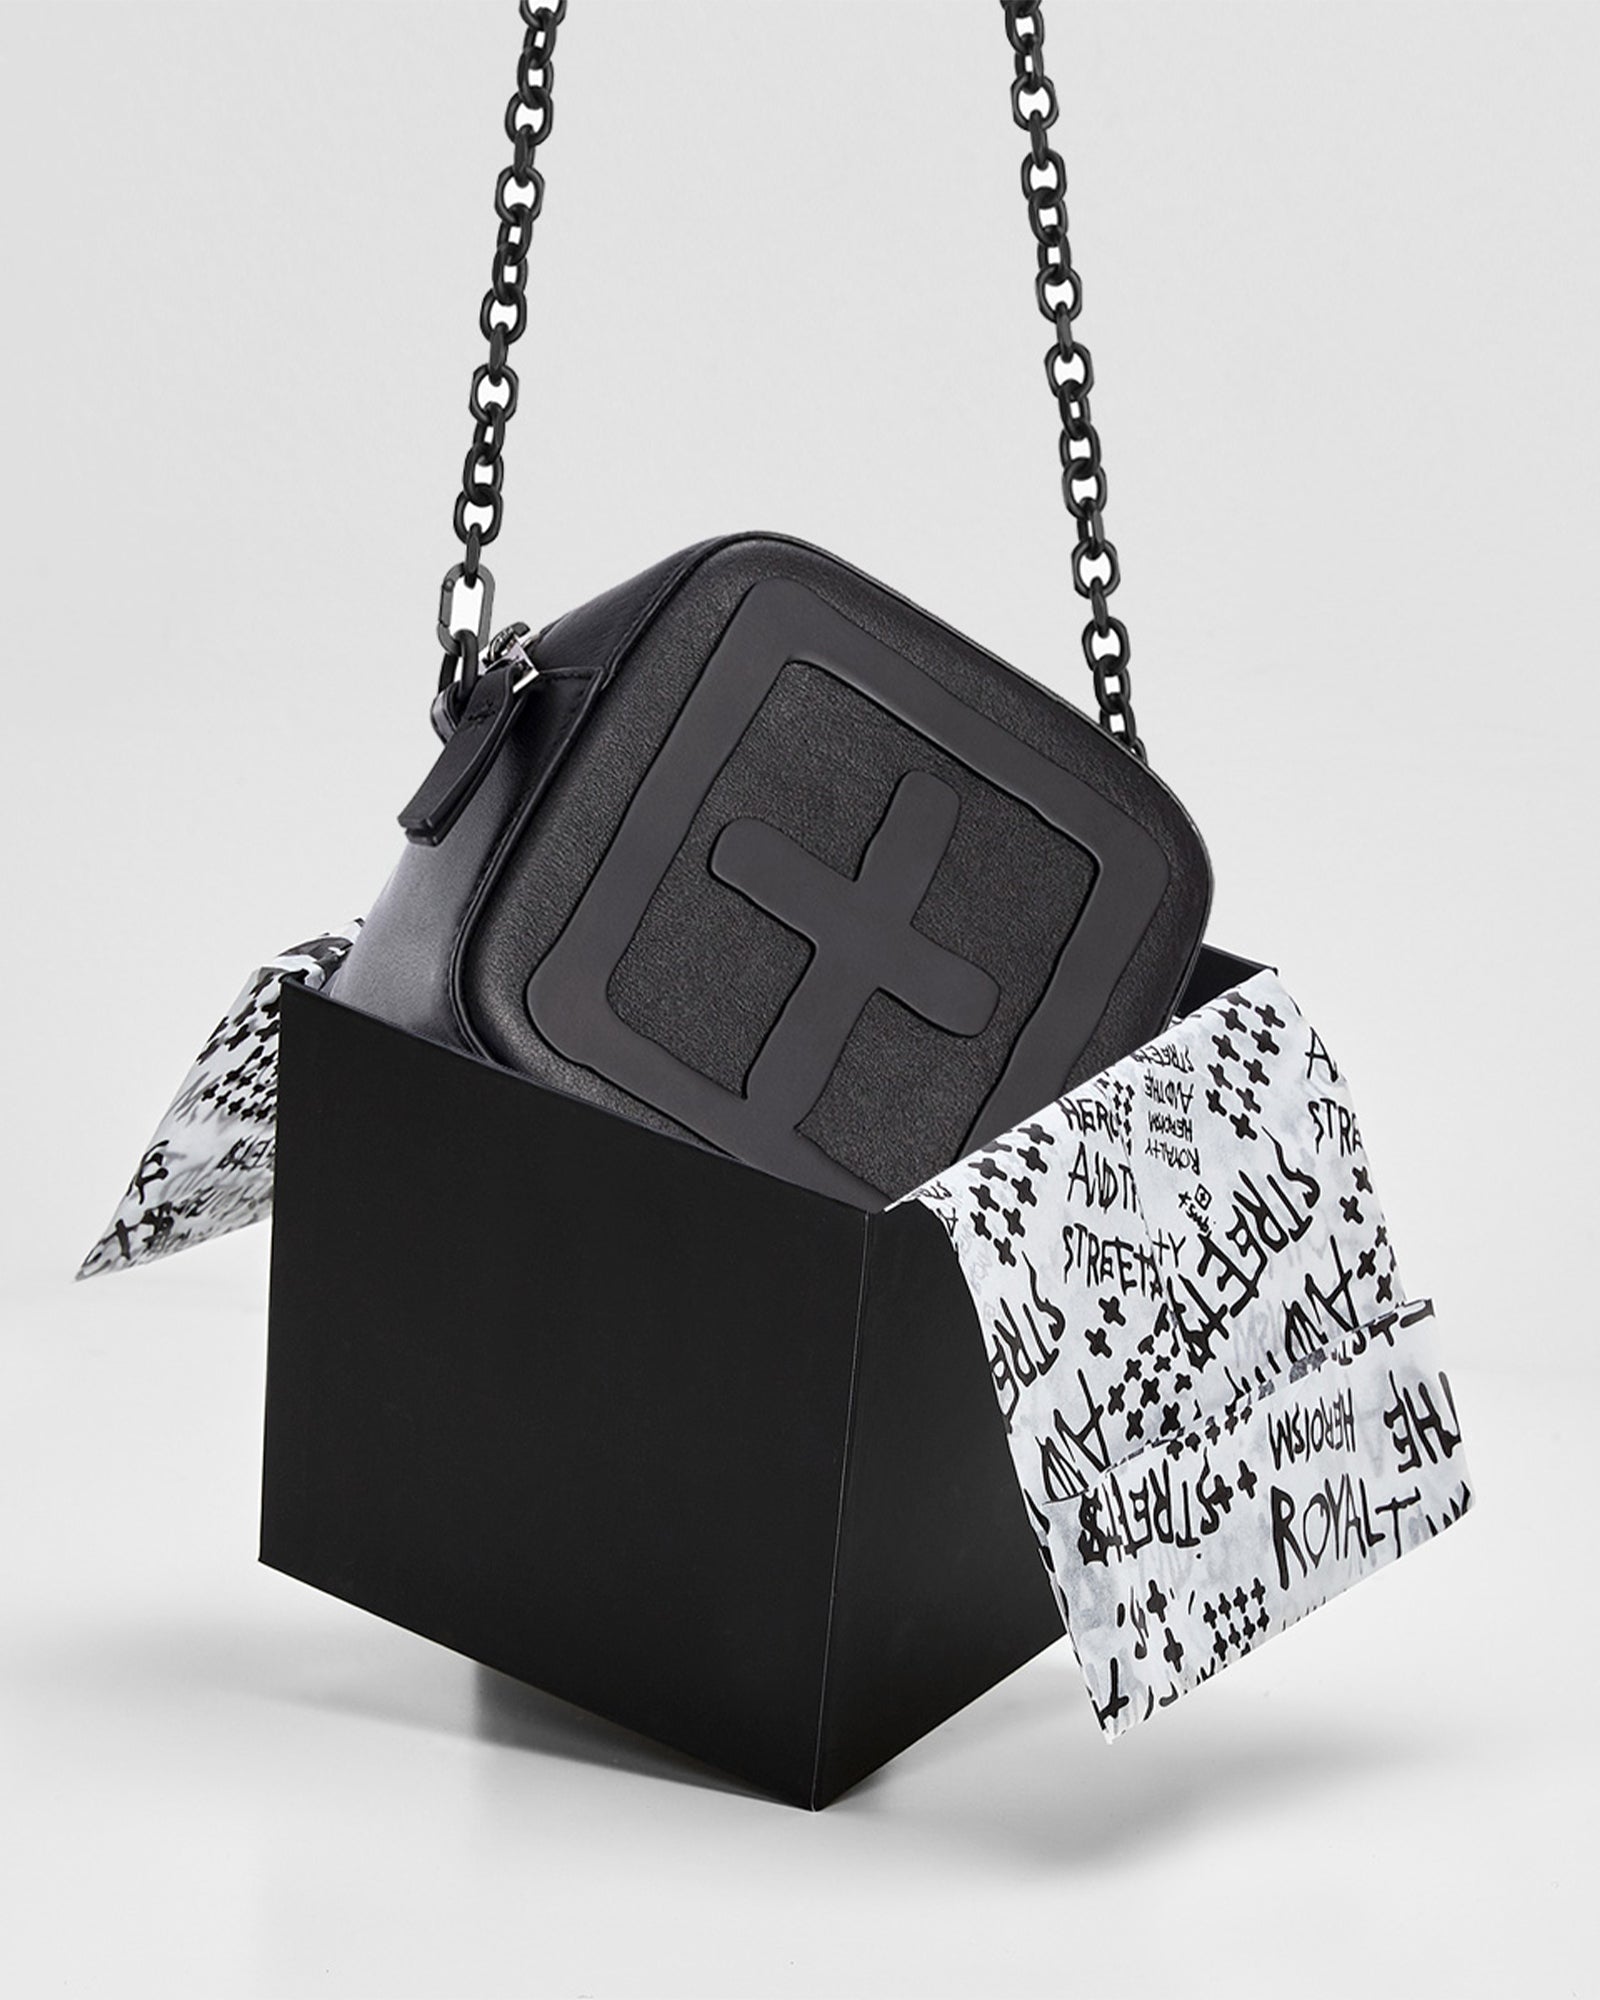 Ksubi Kube Mini Leather Crossbody Bag